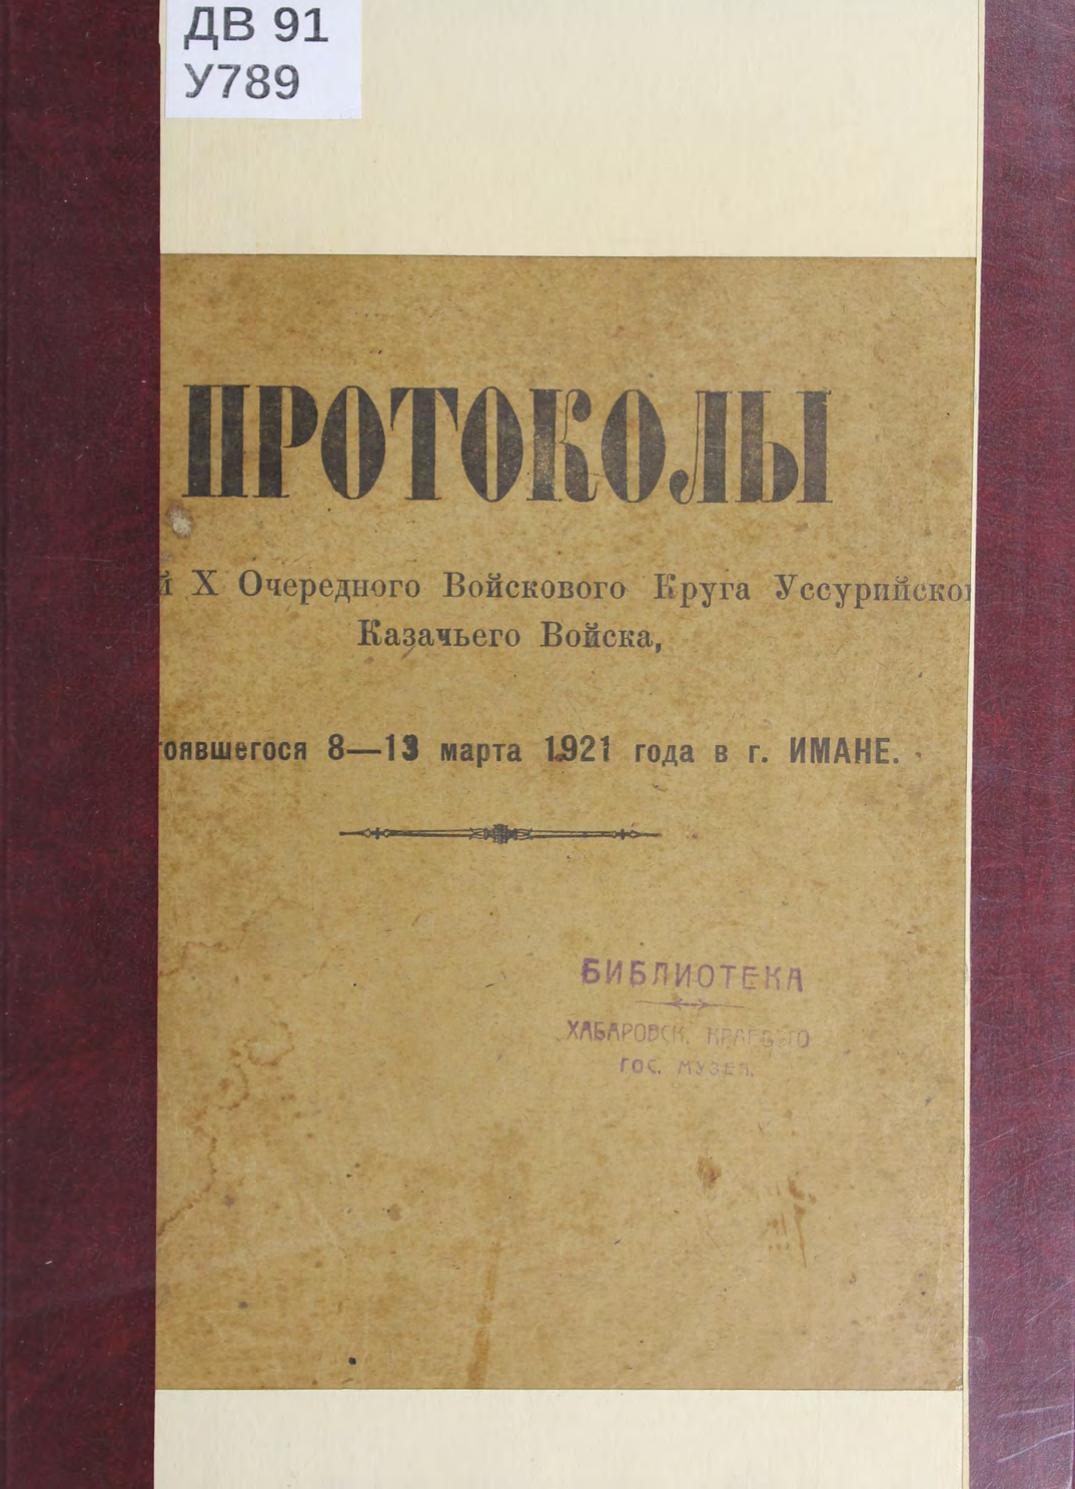 Протоколы заседаний X Очередного Войскового Круга Уссурийского Казачьего Войска, состоявшегося 8-13 марта 1921 года в г. Имане